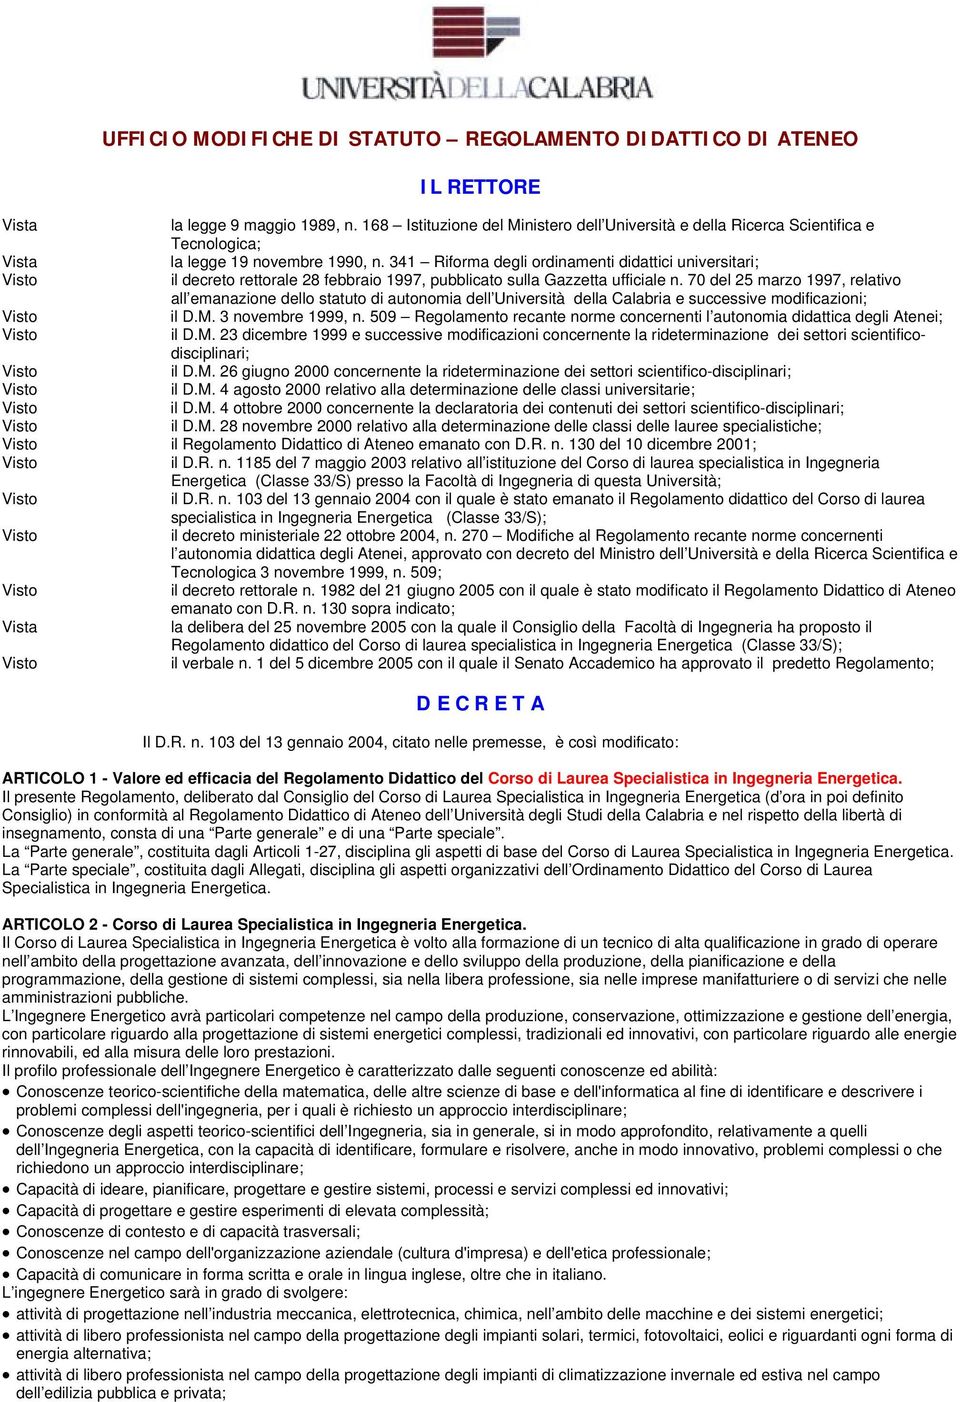 341 Riforma degli ordinamenti didattici universitari; il decreto rettorale 8 febbraio 1997, pubblicato sulla Gazzetta ufficiale n.